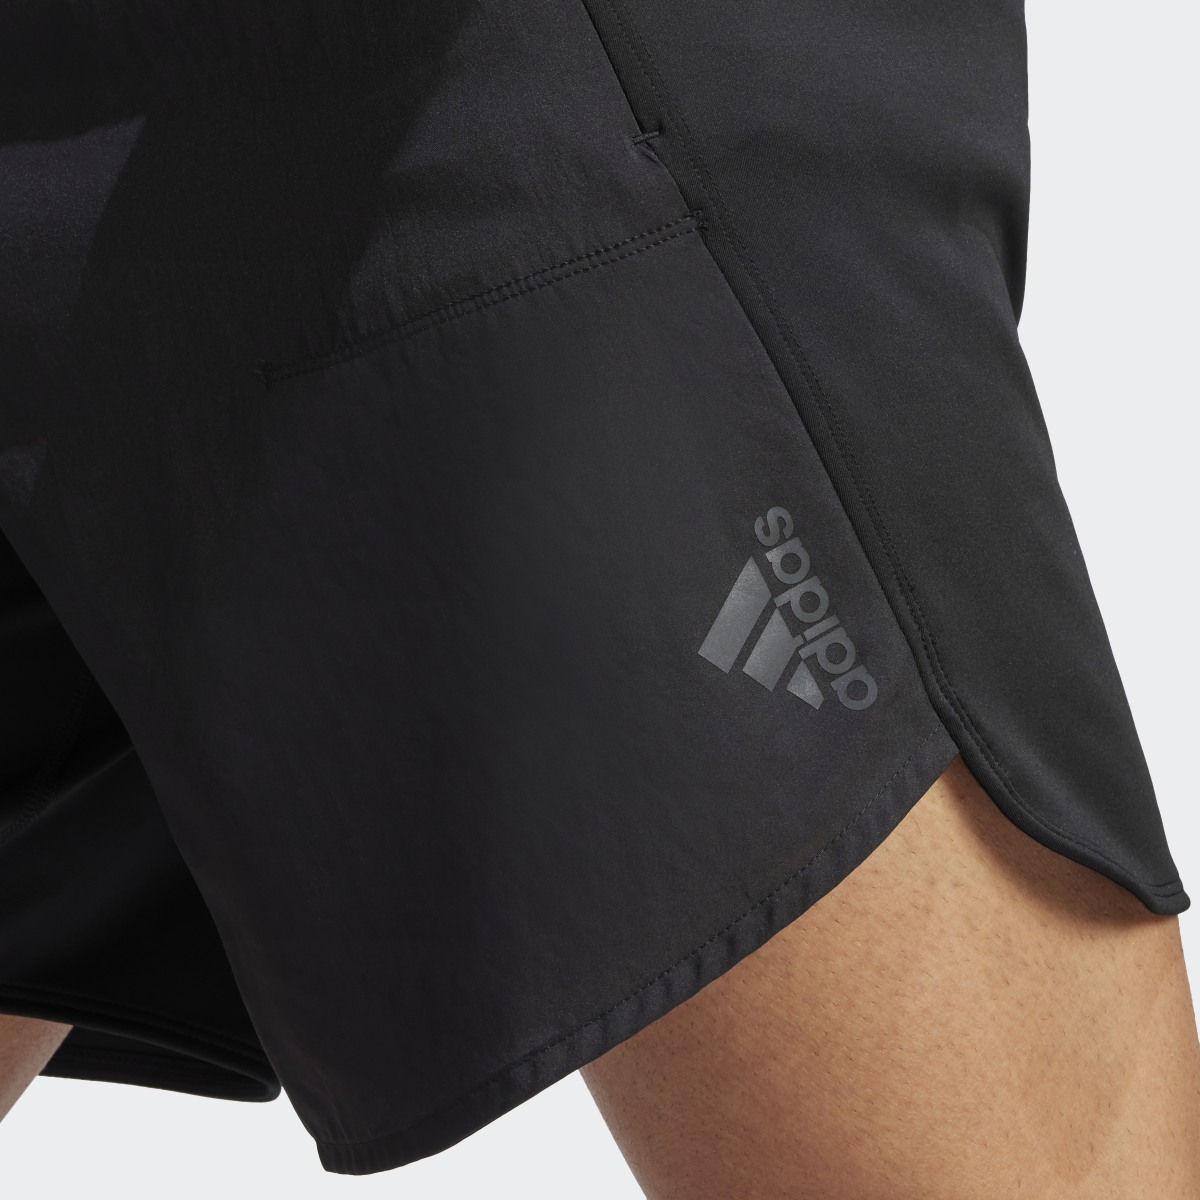 Adidas Shorts Designed for Training. 6